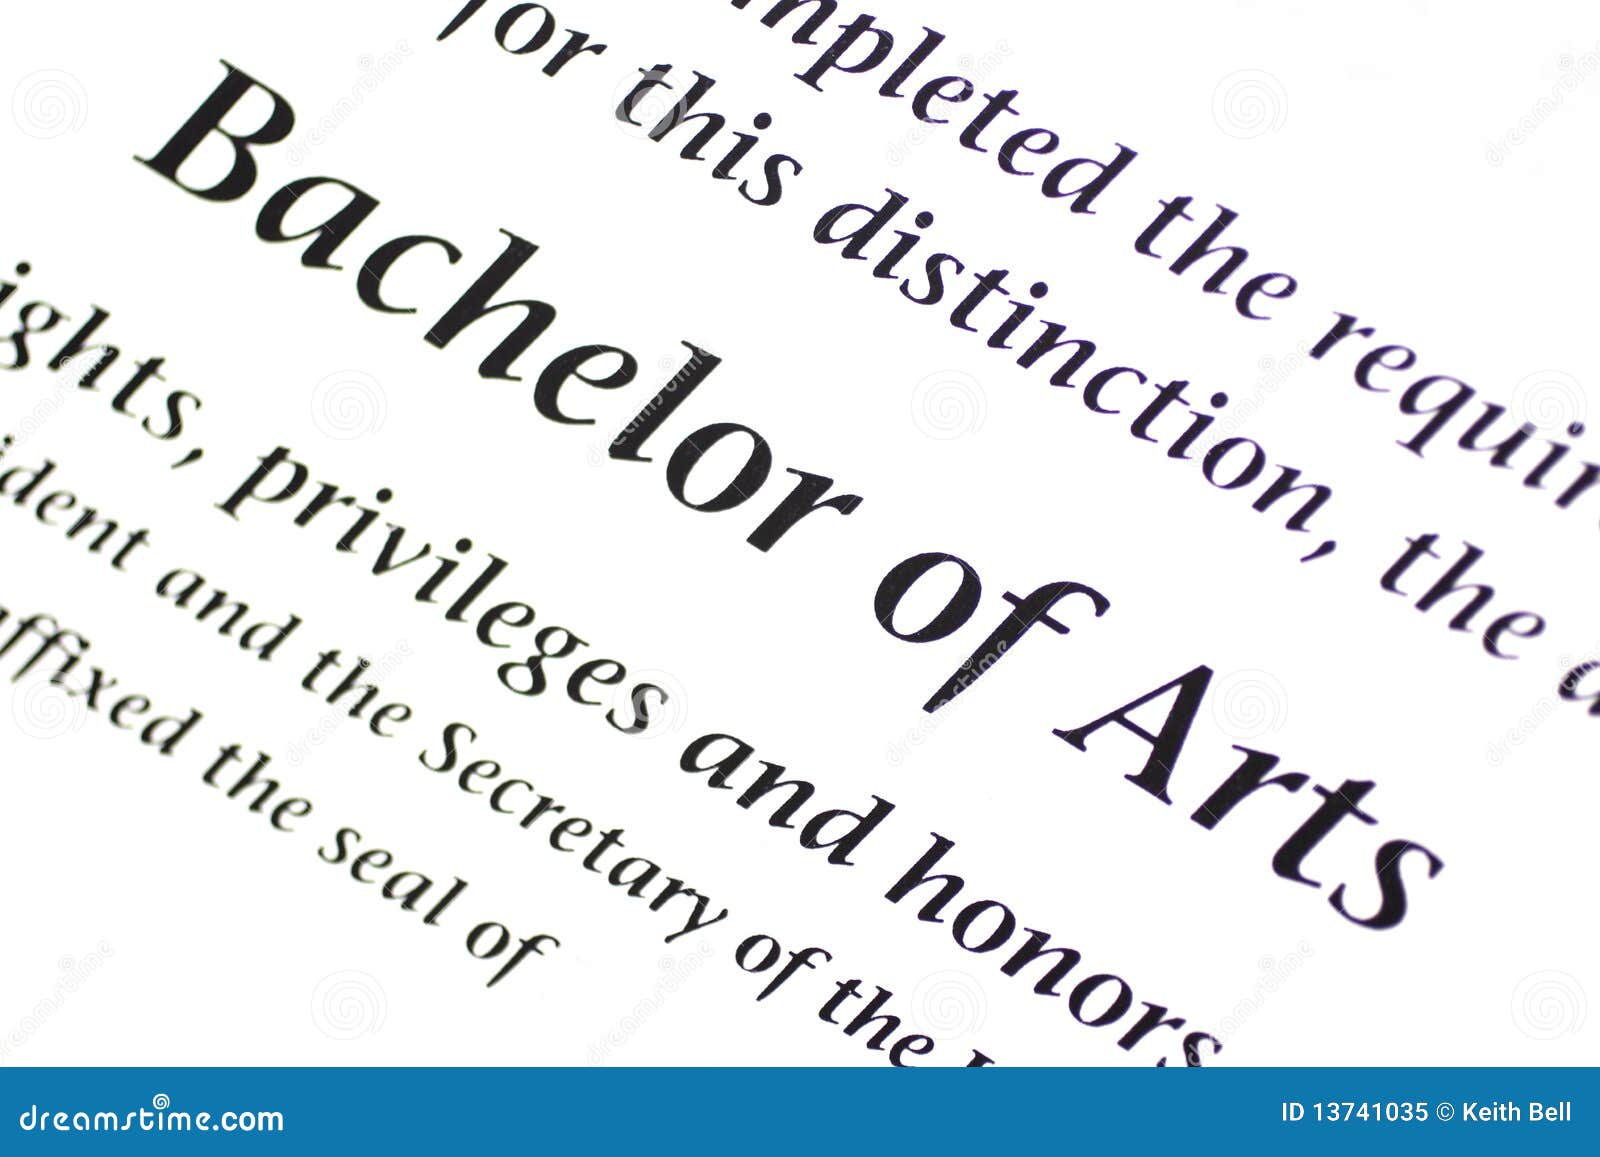 bachelor of arts